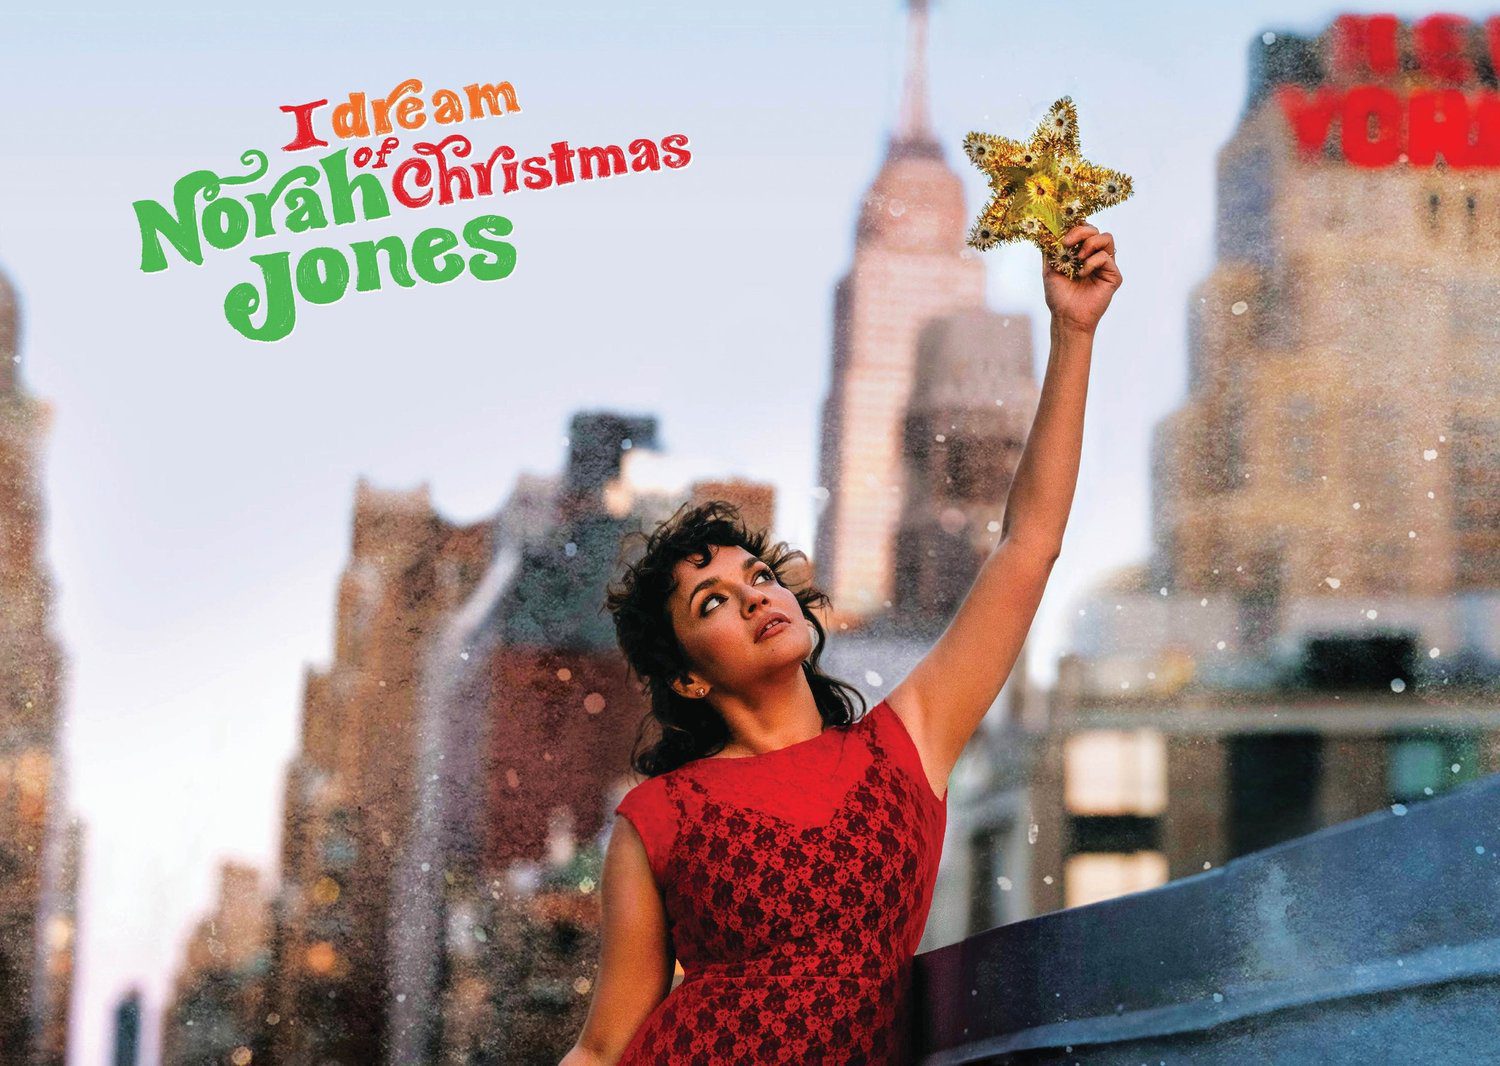 Norah Jones’s “I Dream of Christmas”—A new Christmas classic?